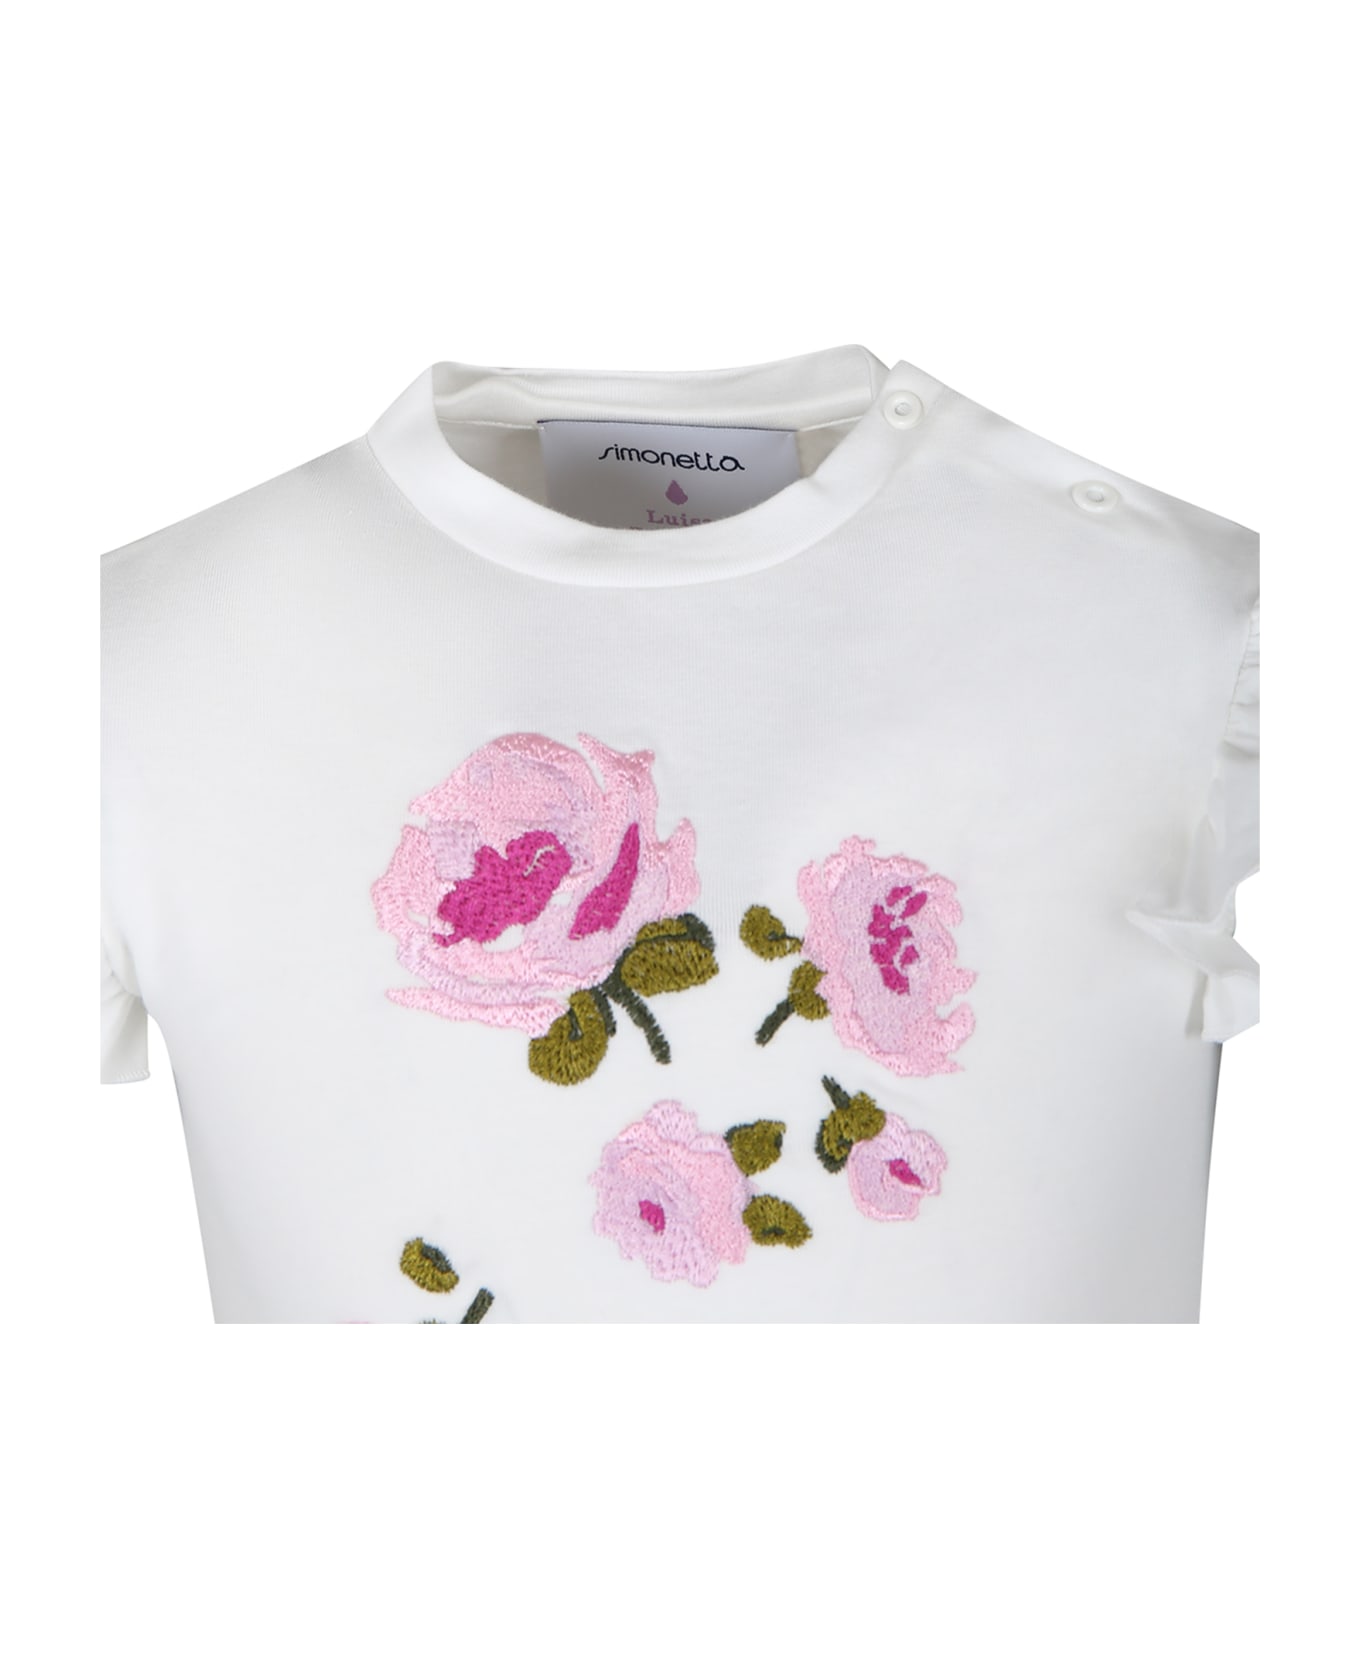 Simonetta White T-shirt For Baby Girl With Roses - White